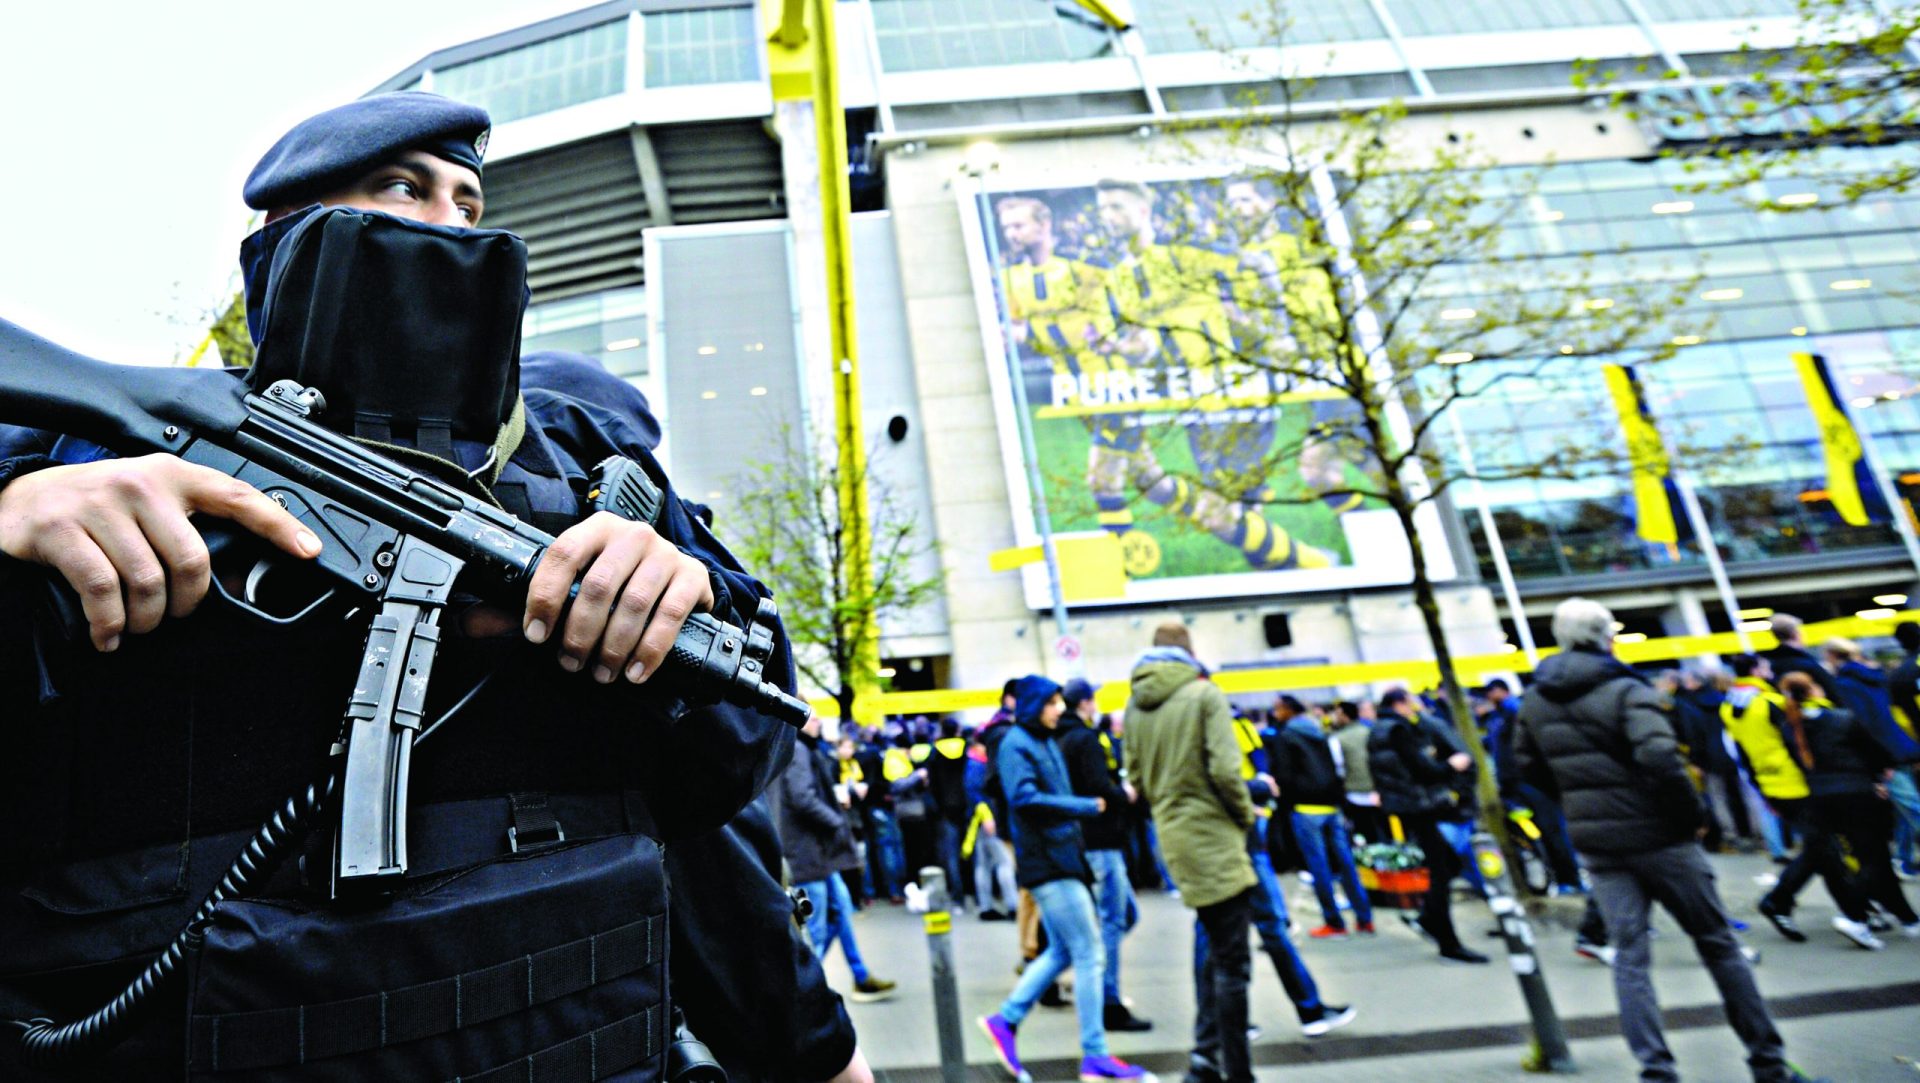 Dortmund. Polícia deteve suspeito “islamista”